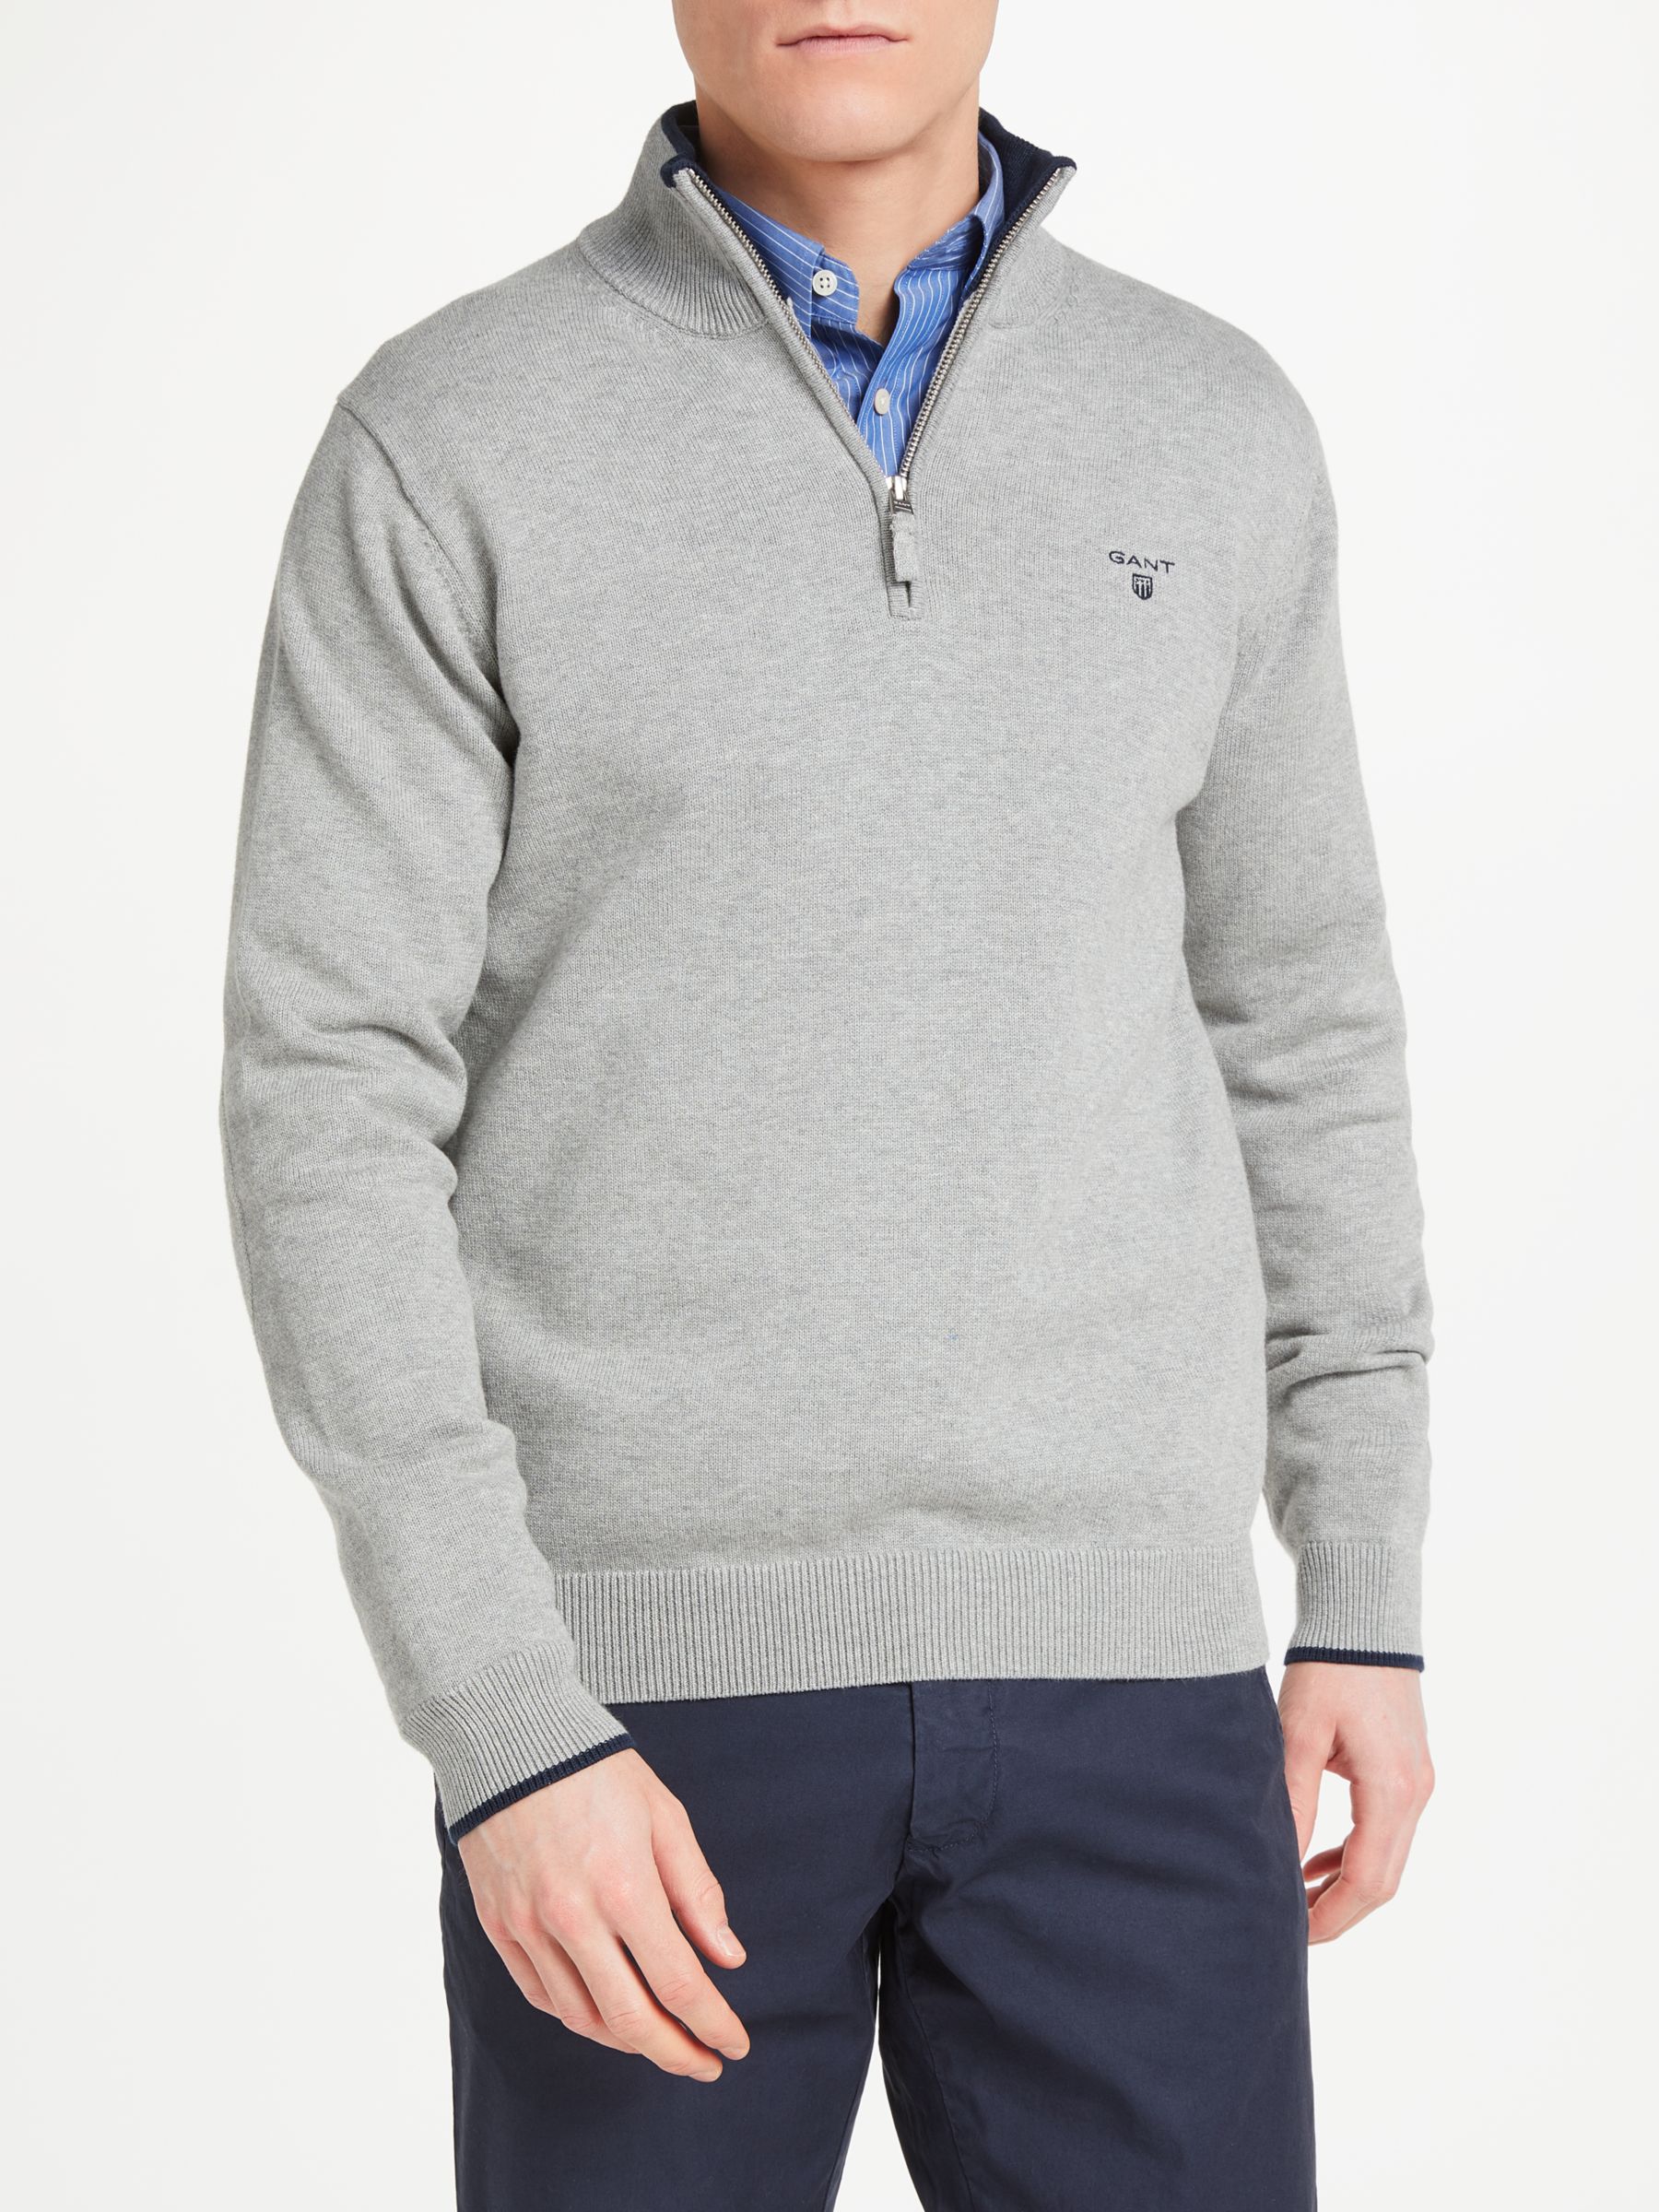 GANT Cotton Contrast Half Zip Sweatshirt, Grey, XXL